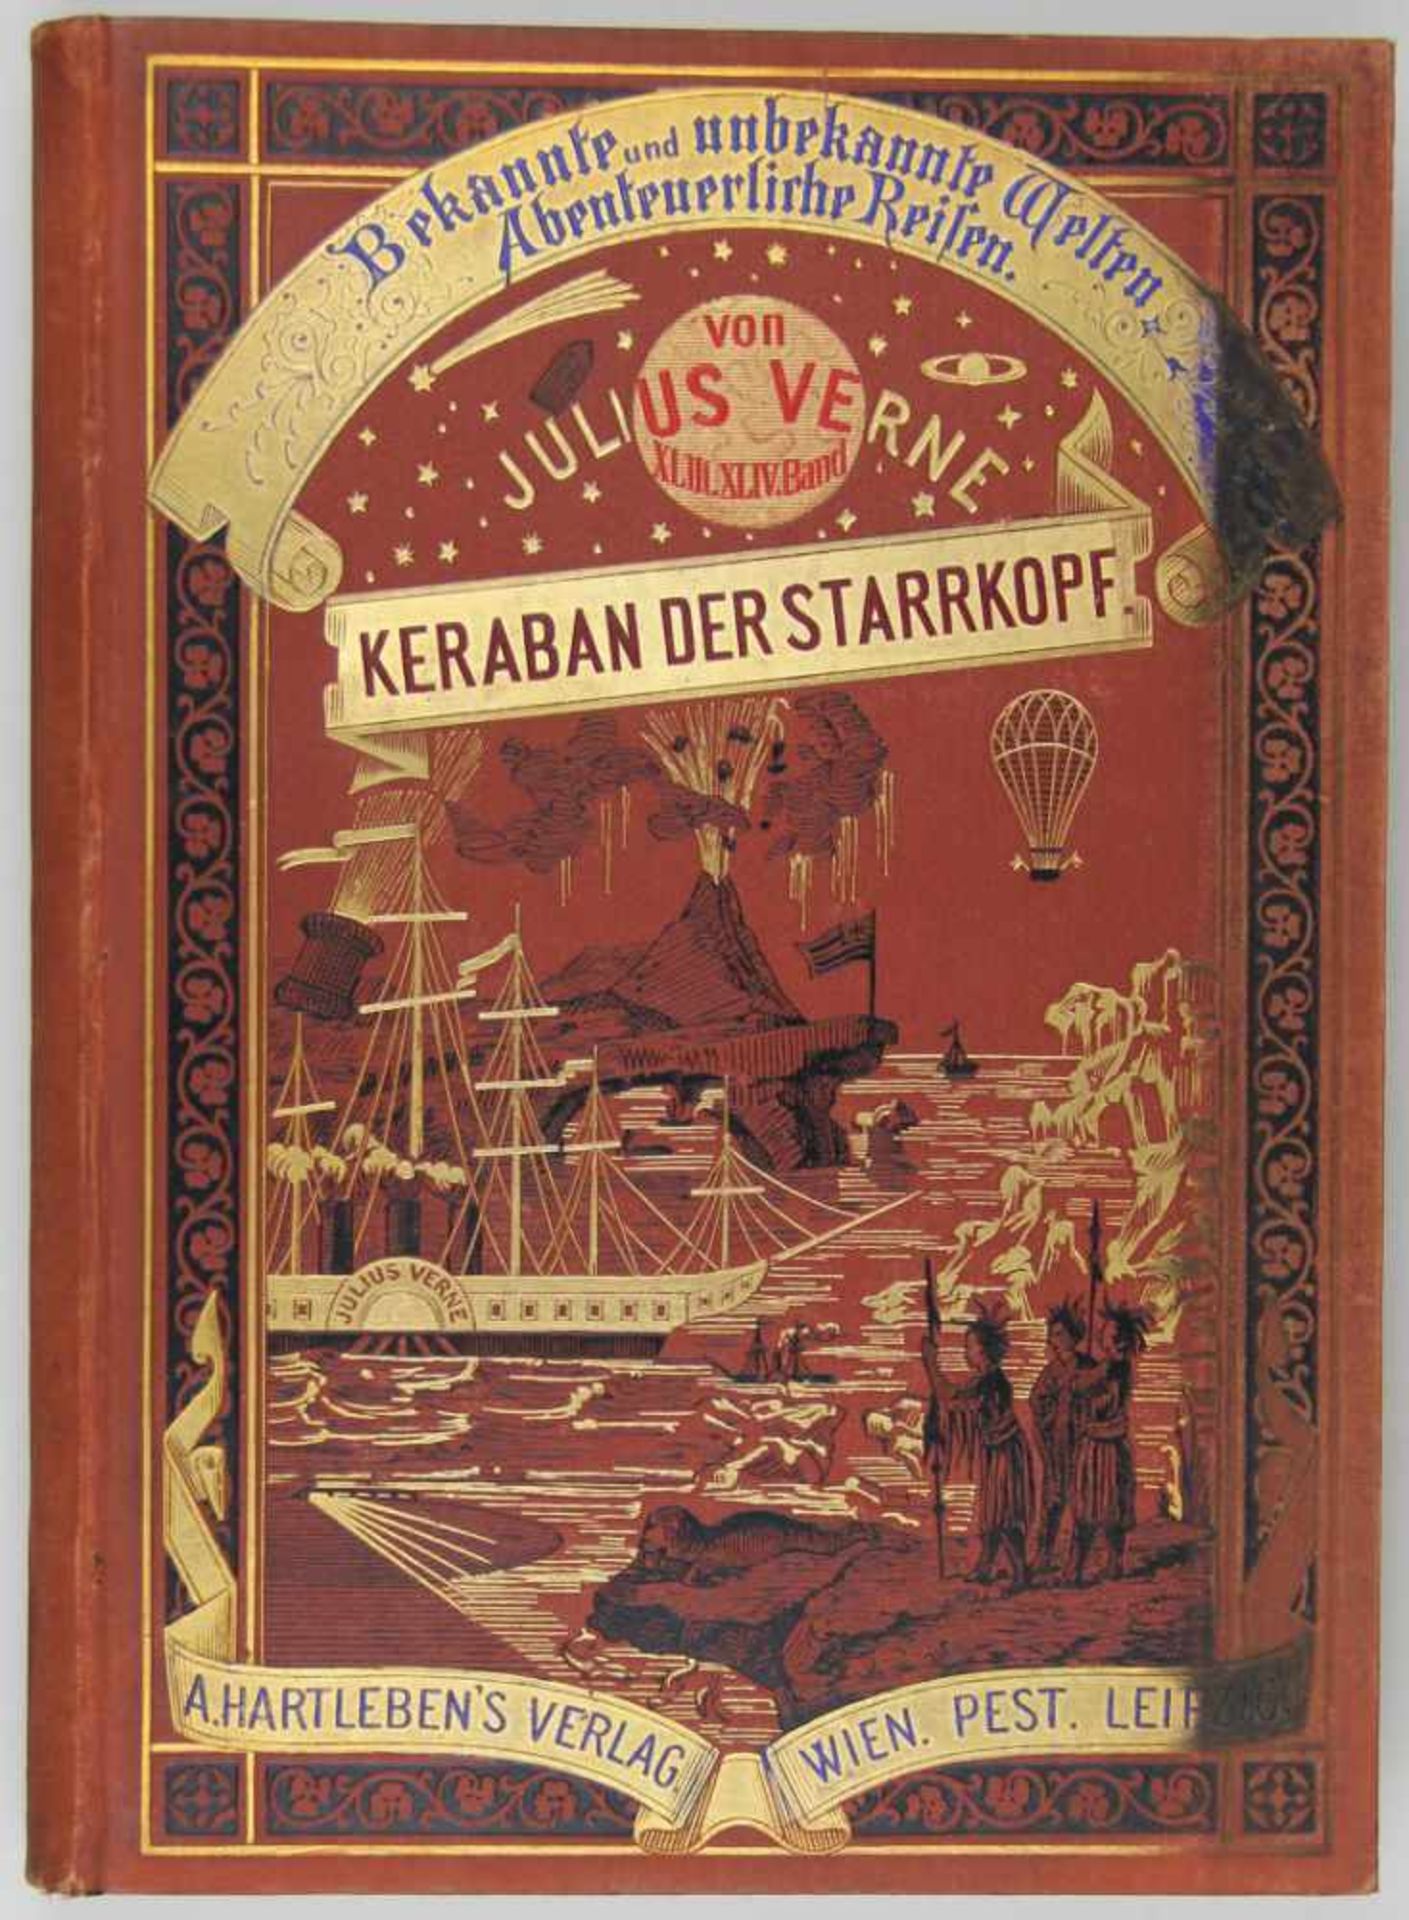 Verne, Jules: Keraban der Starrkopf. Wien, Pest und Leipzig, A. Hartleben 1887. Mit 102 Holzstich-